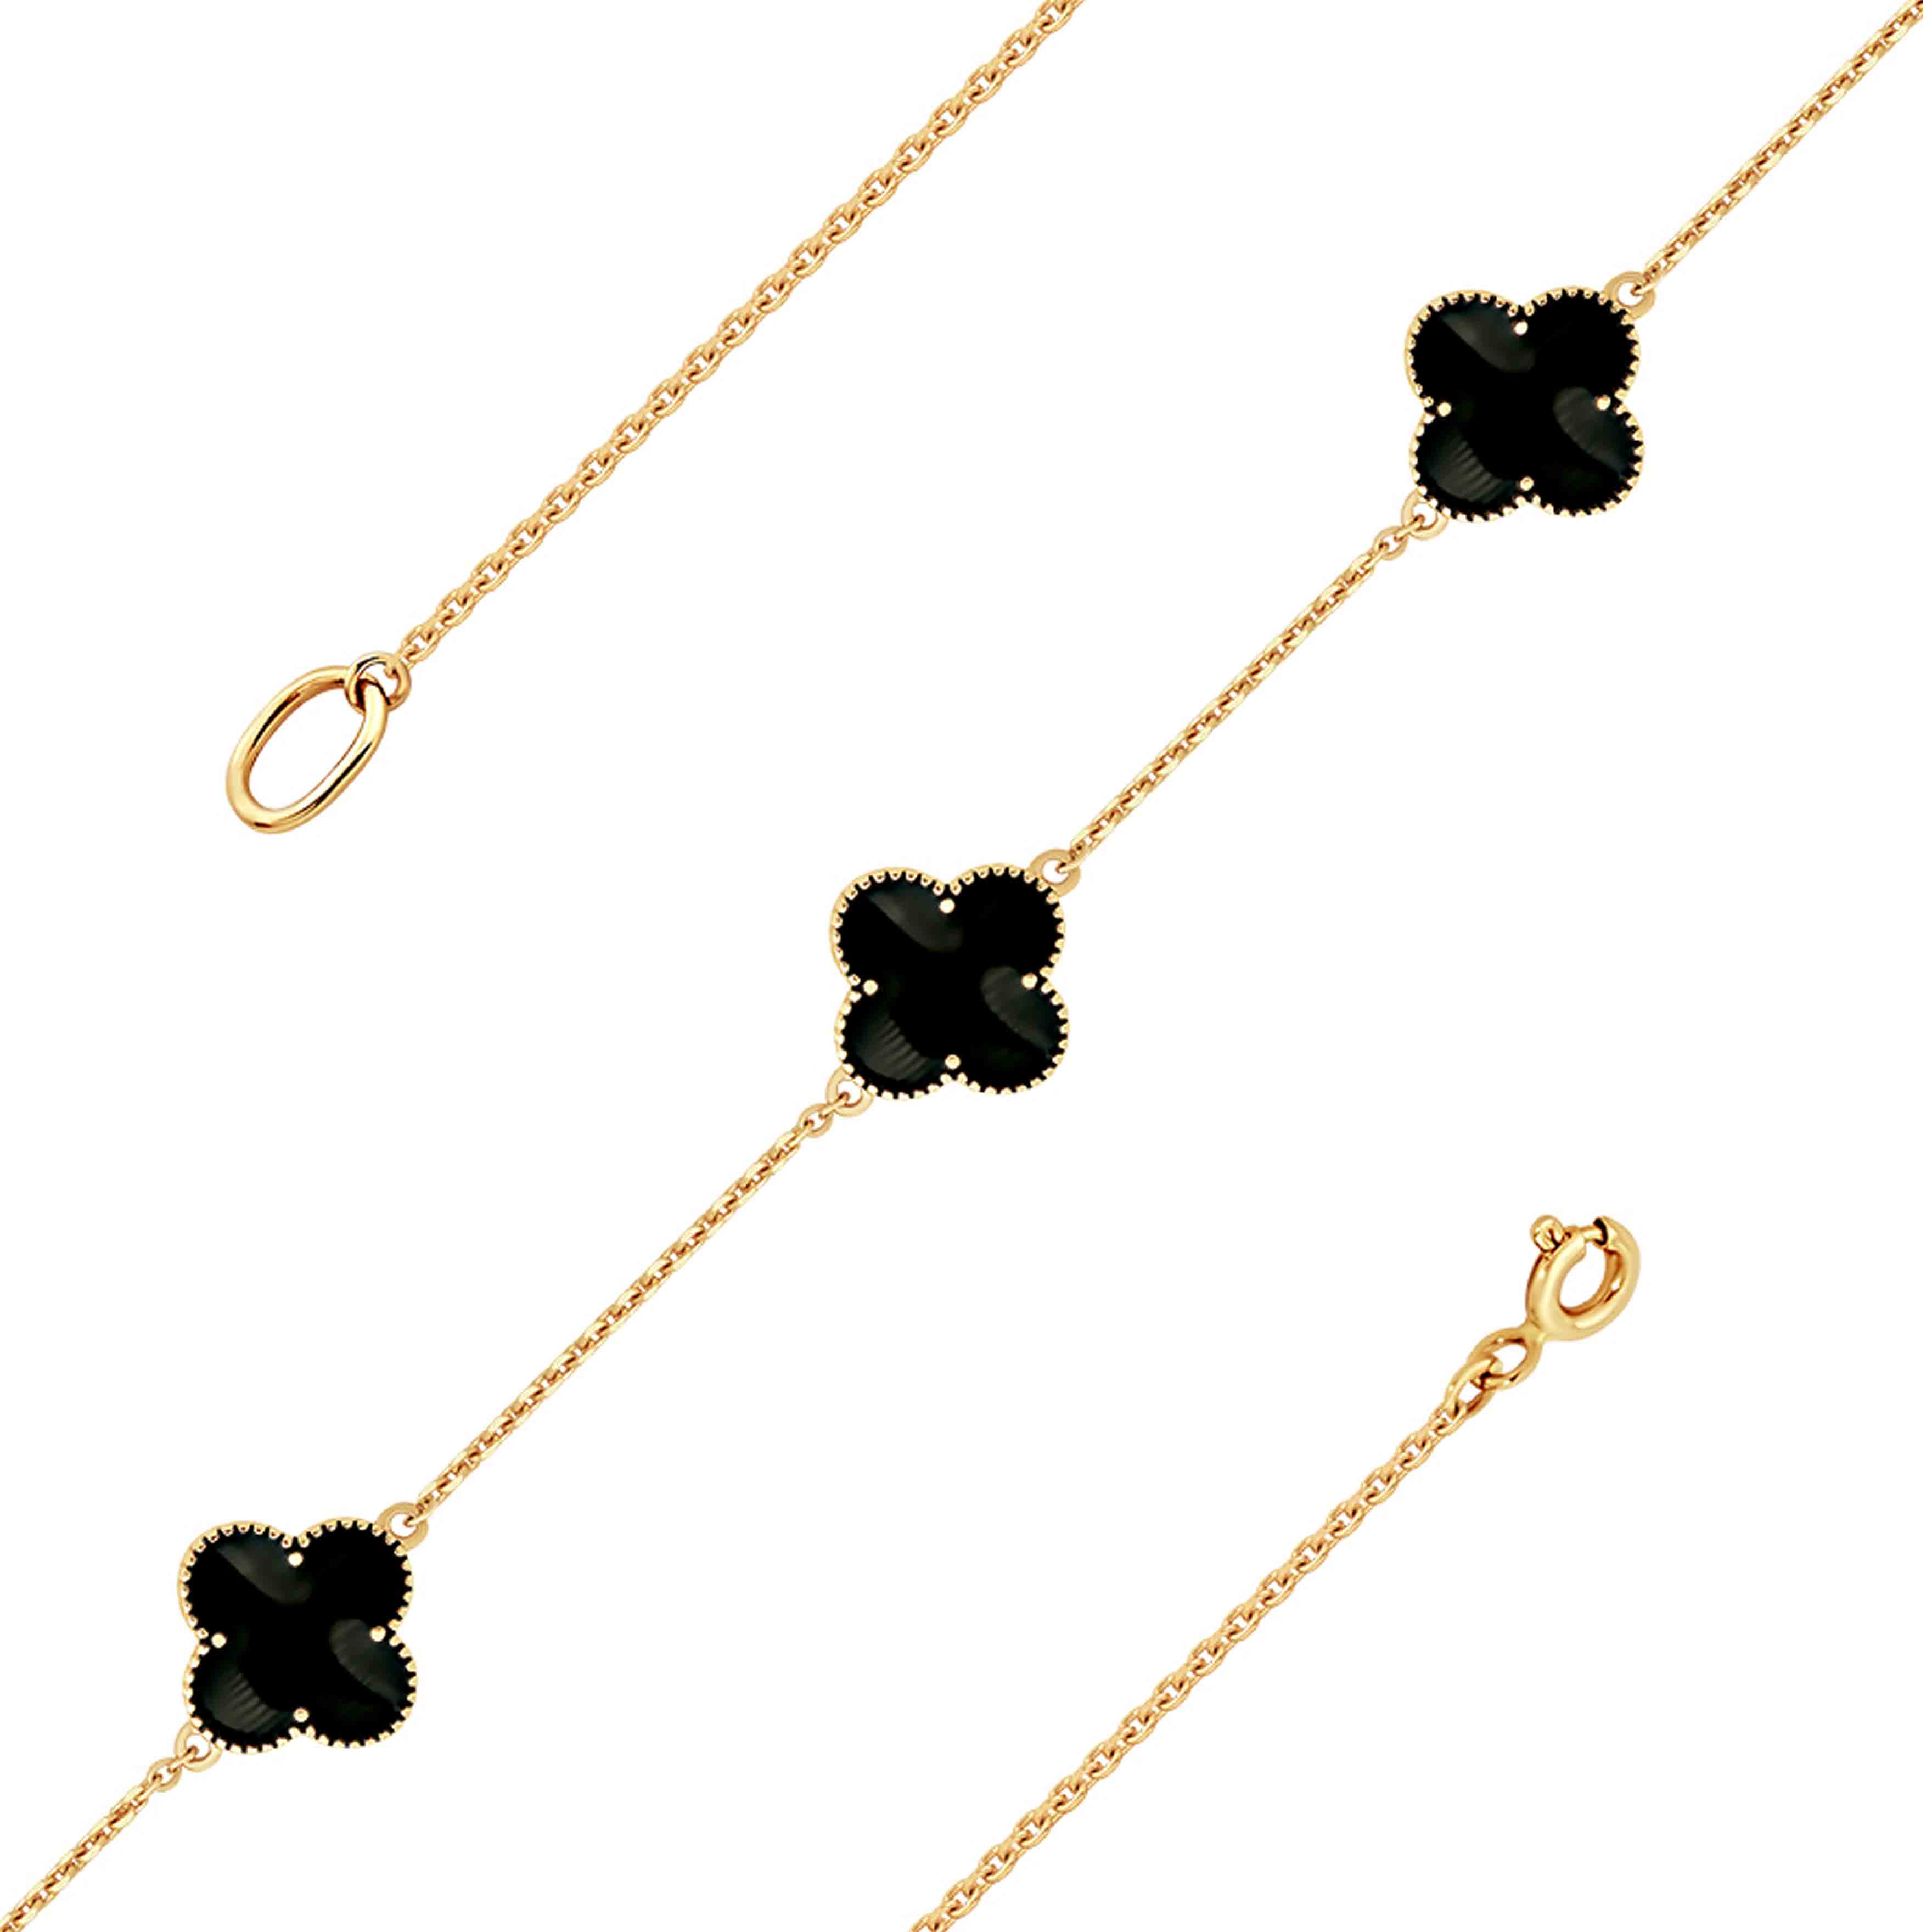 Enamel Bracelet. Certified 585 (14kt) Rose Gold. Black Enamel Four-leaf Clover Bracelet